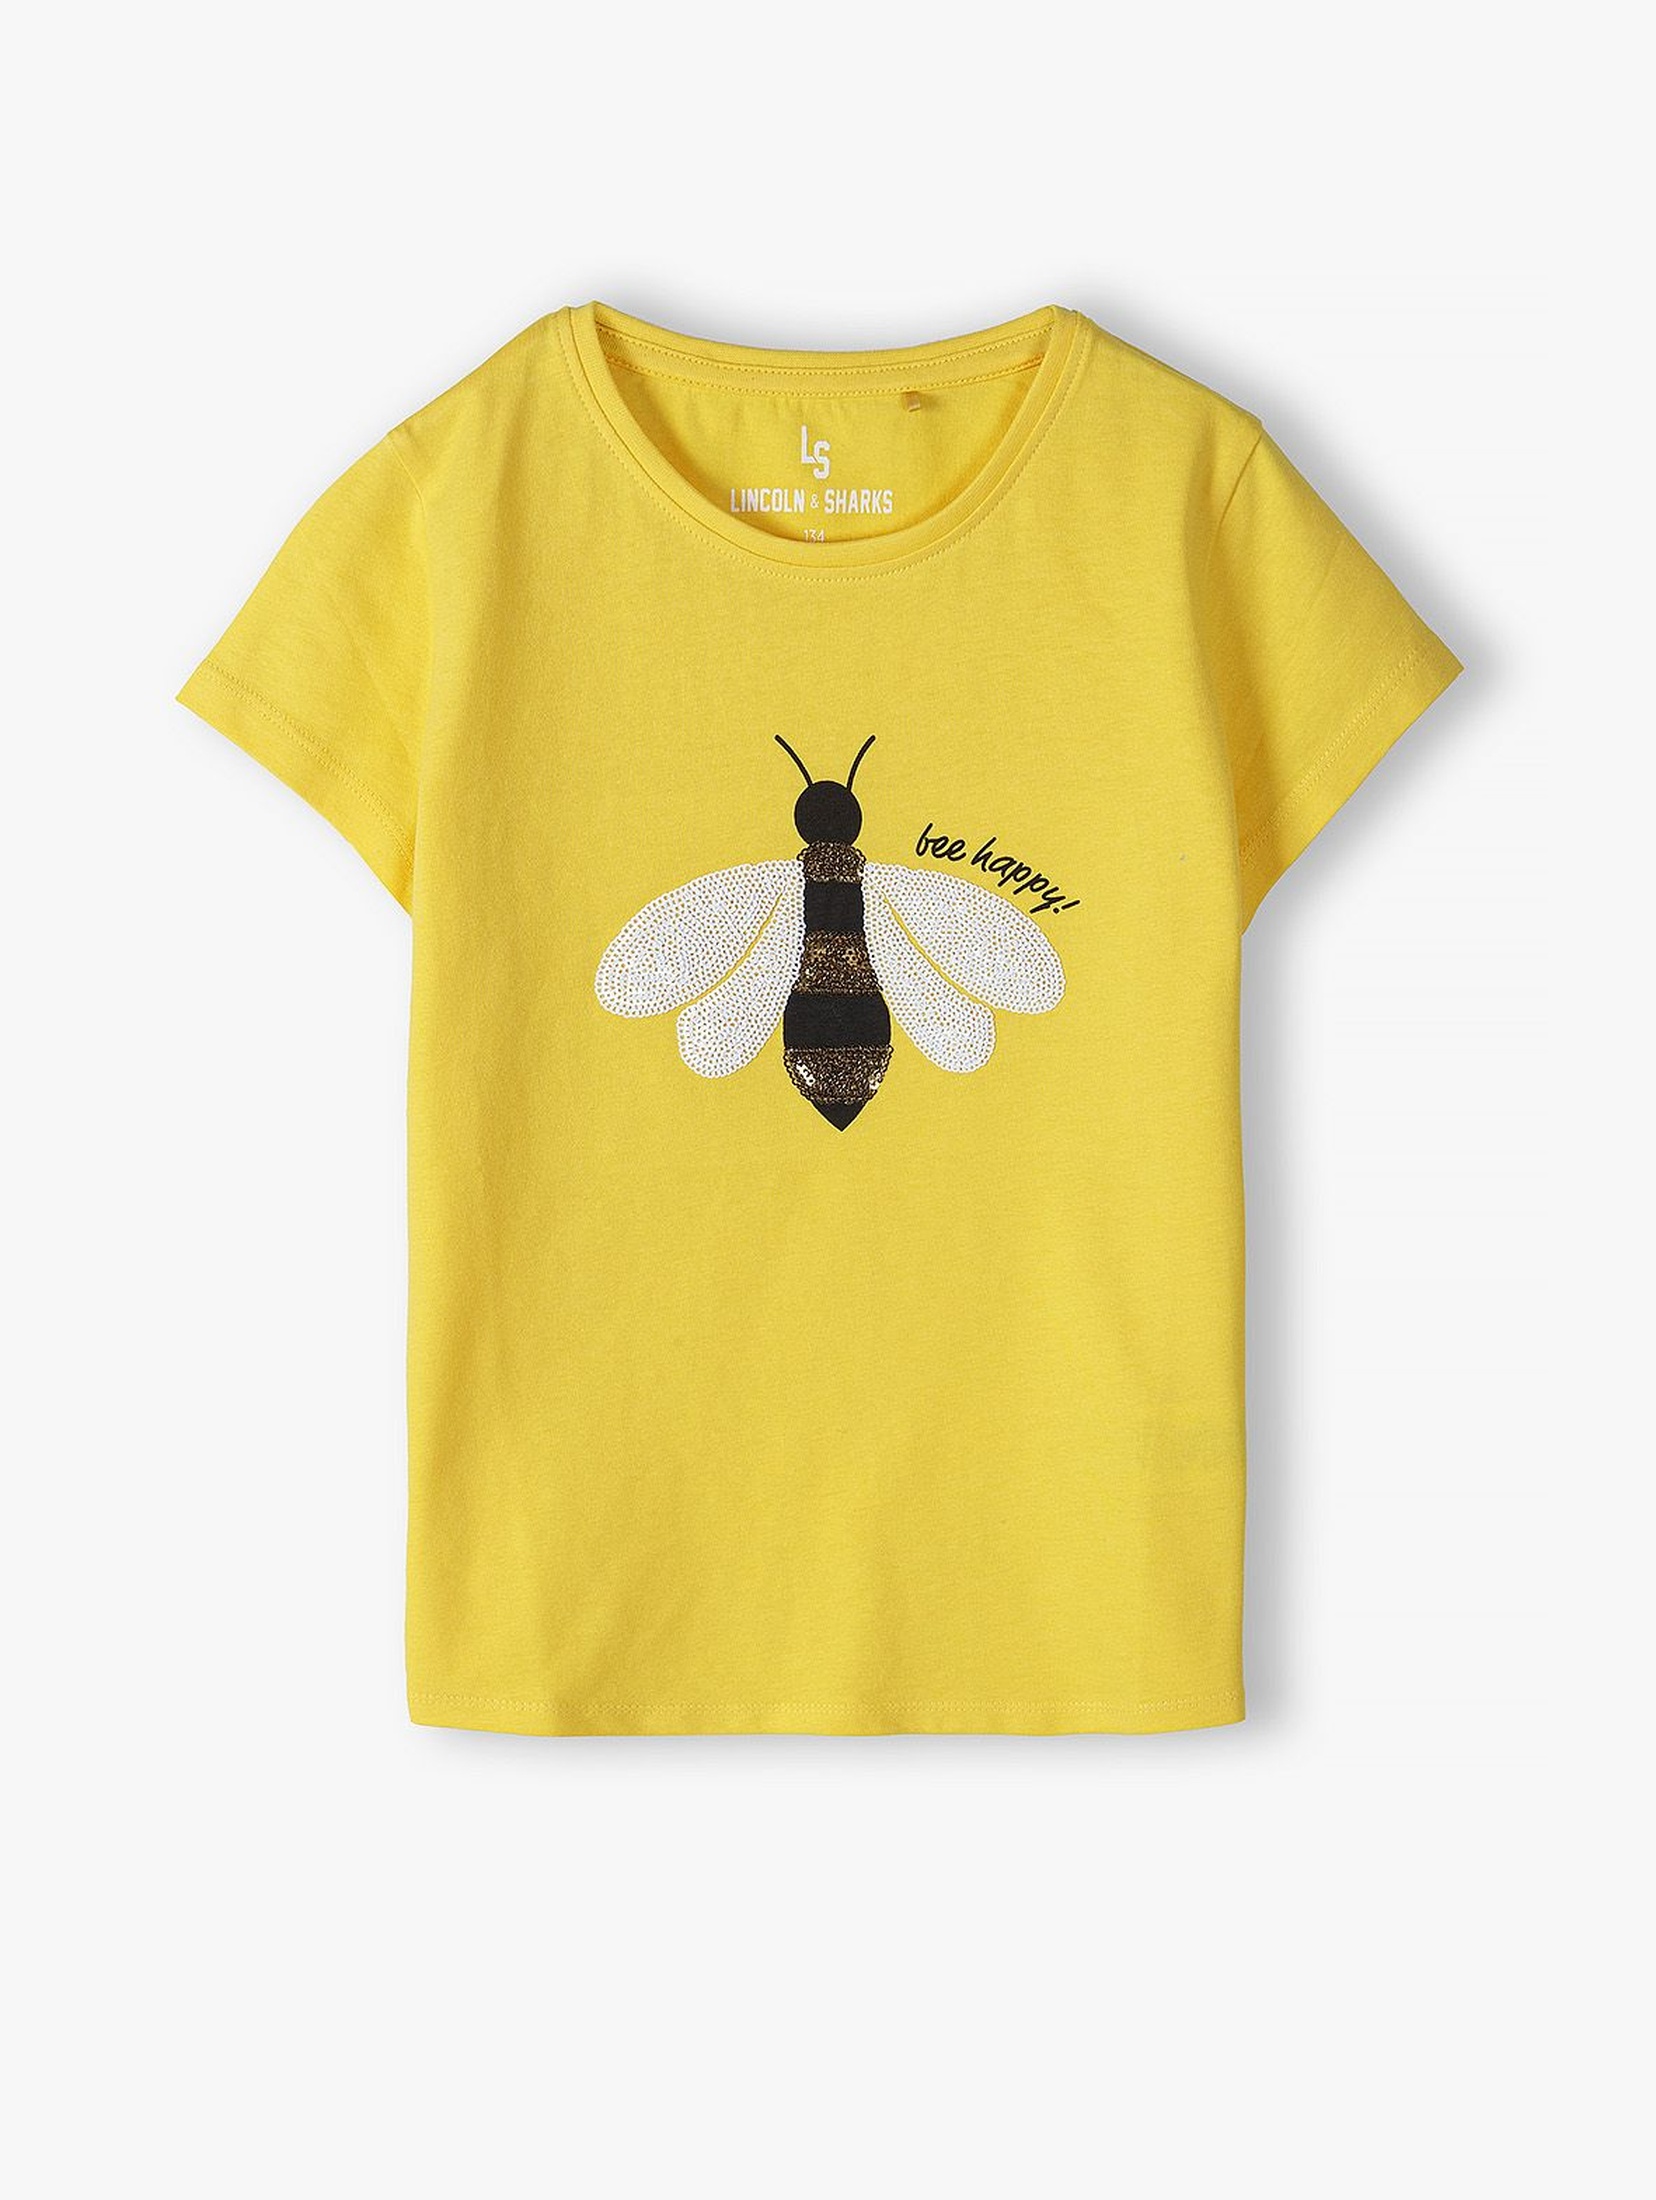 Bawełniany T- shirt dziewczęcy z cekinową pszczółą - żółty